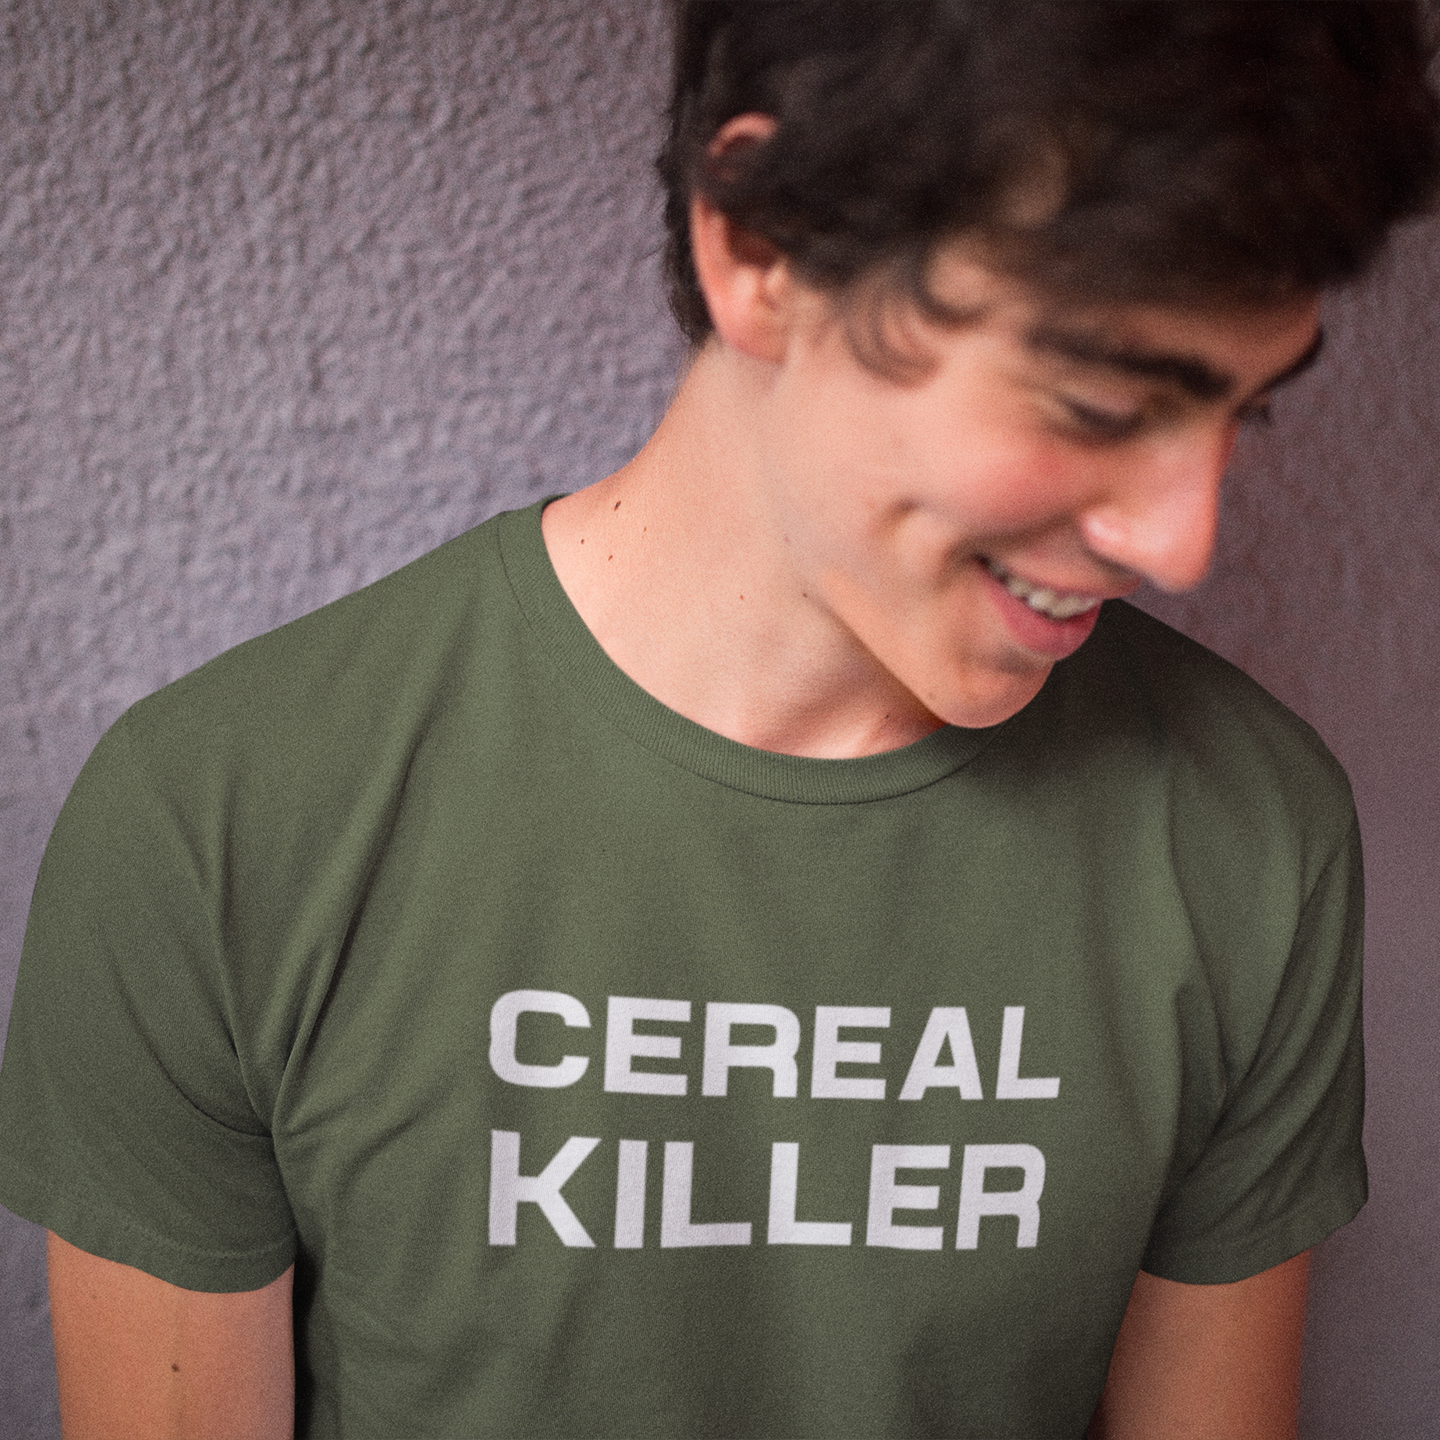 'Cereal killer' volwassene shirt